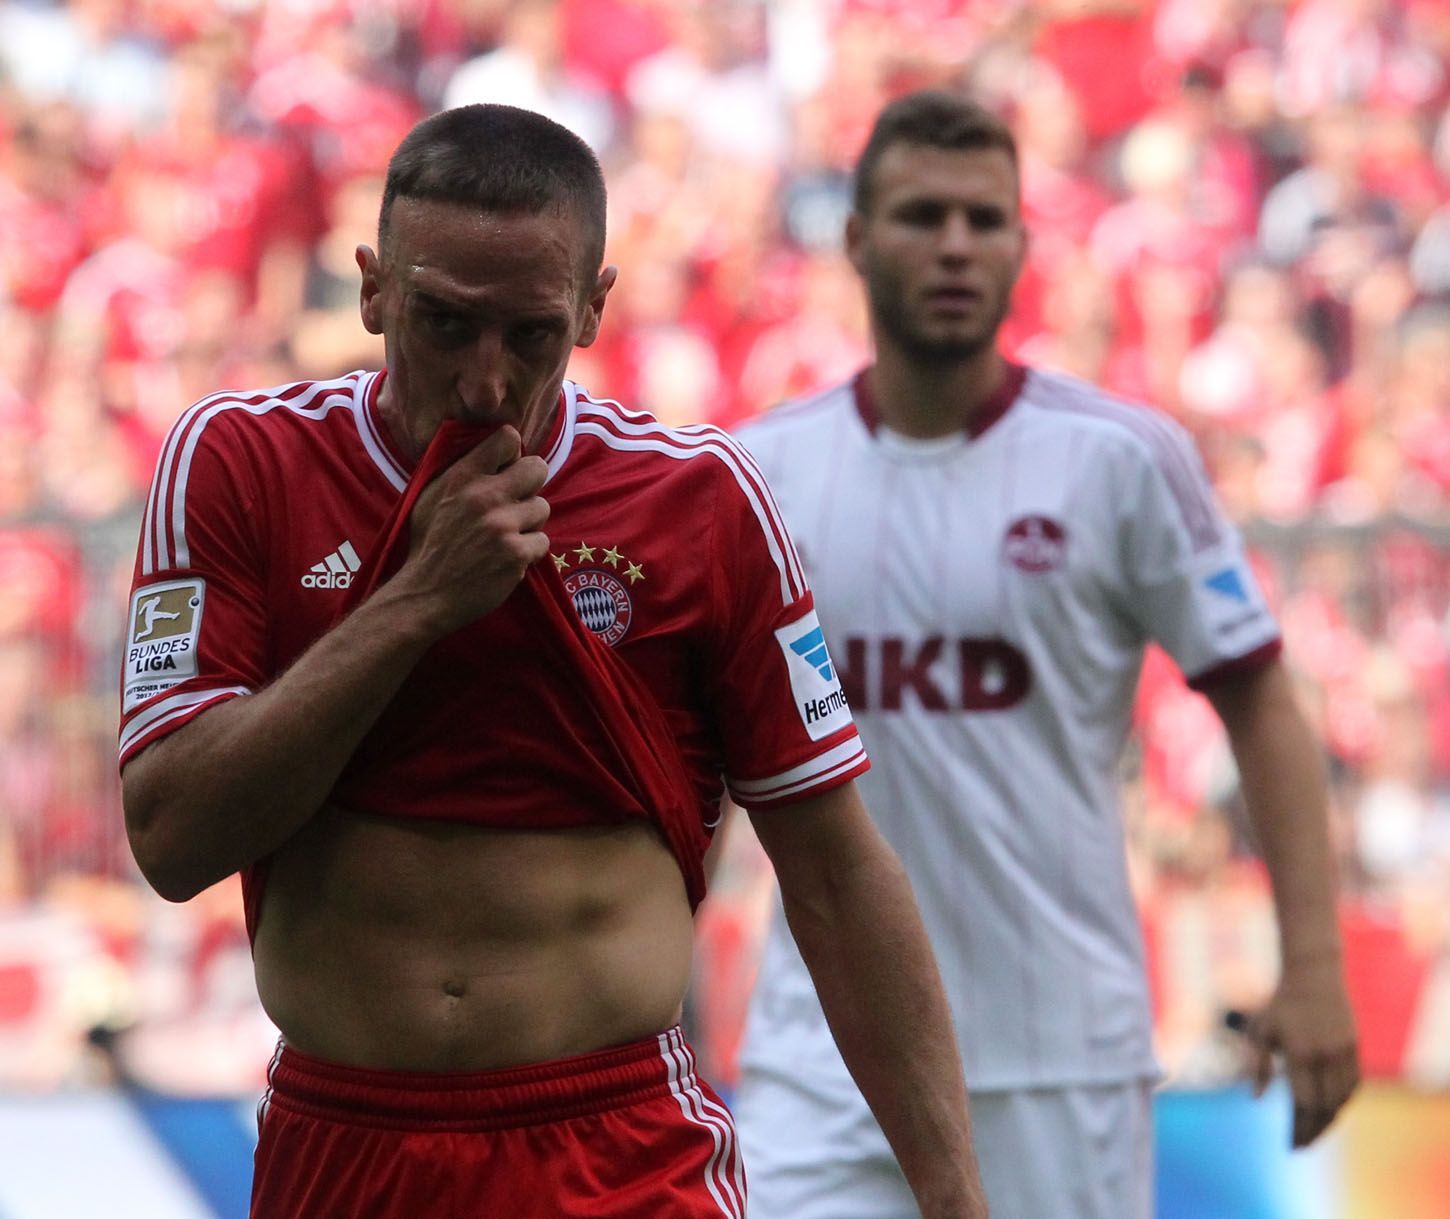 Bundesliga, Bayern Mnichov - 1. FC Norimberk (Franck Ribéry)